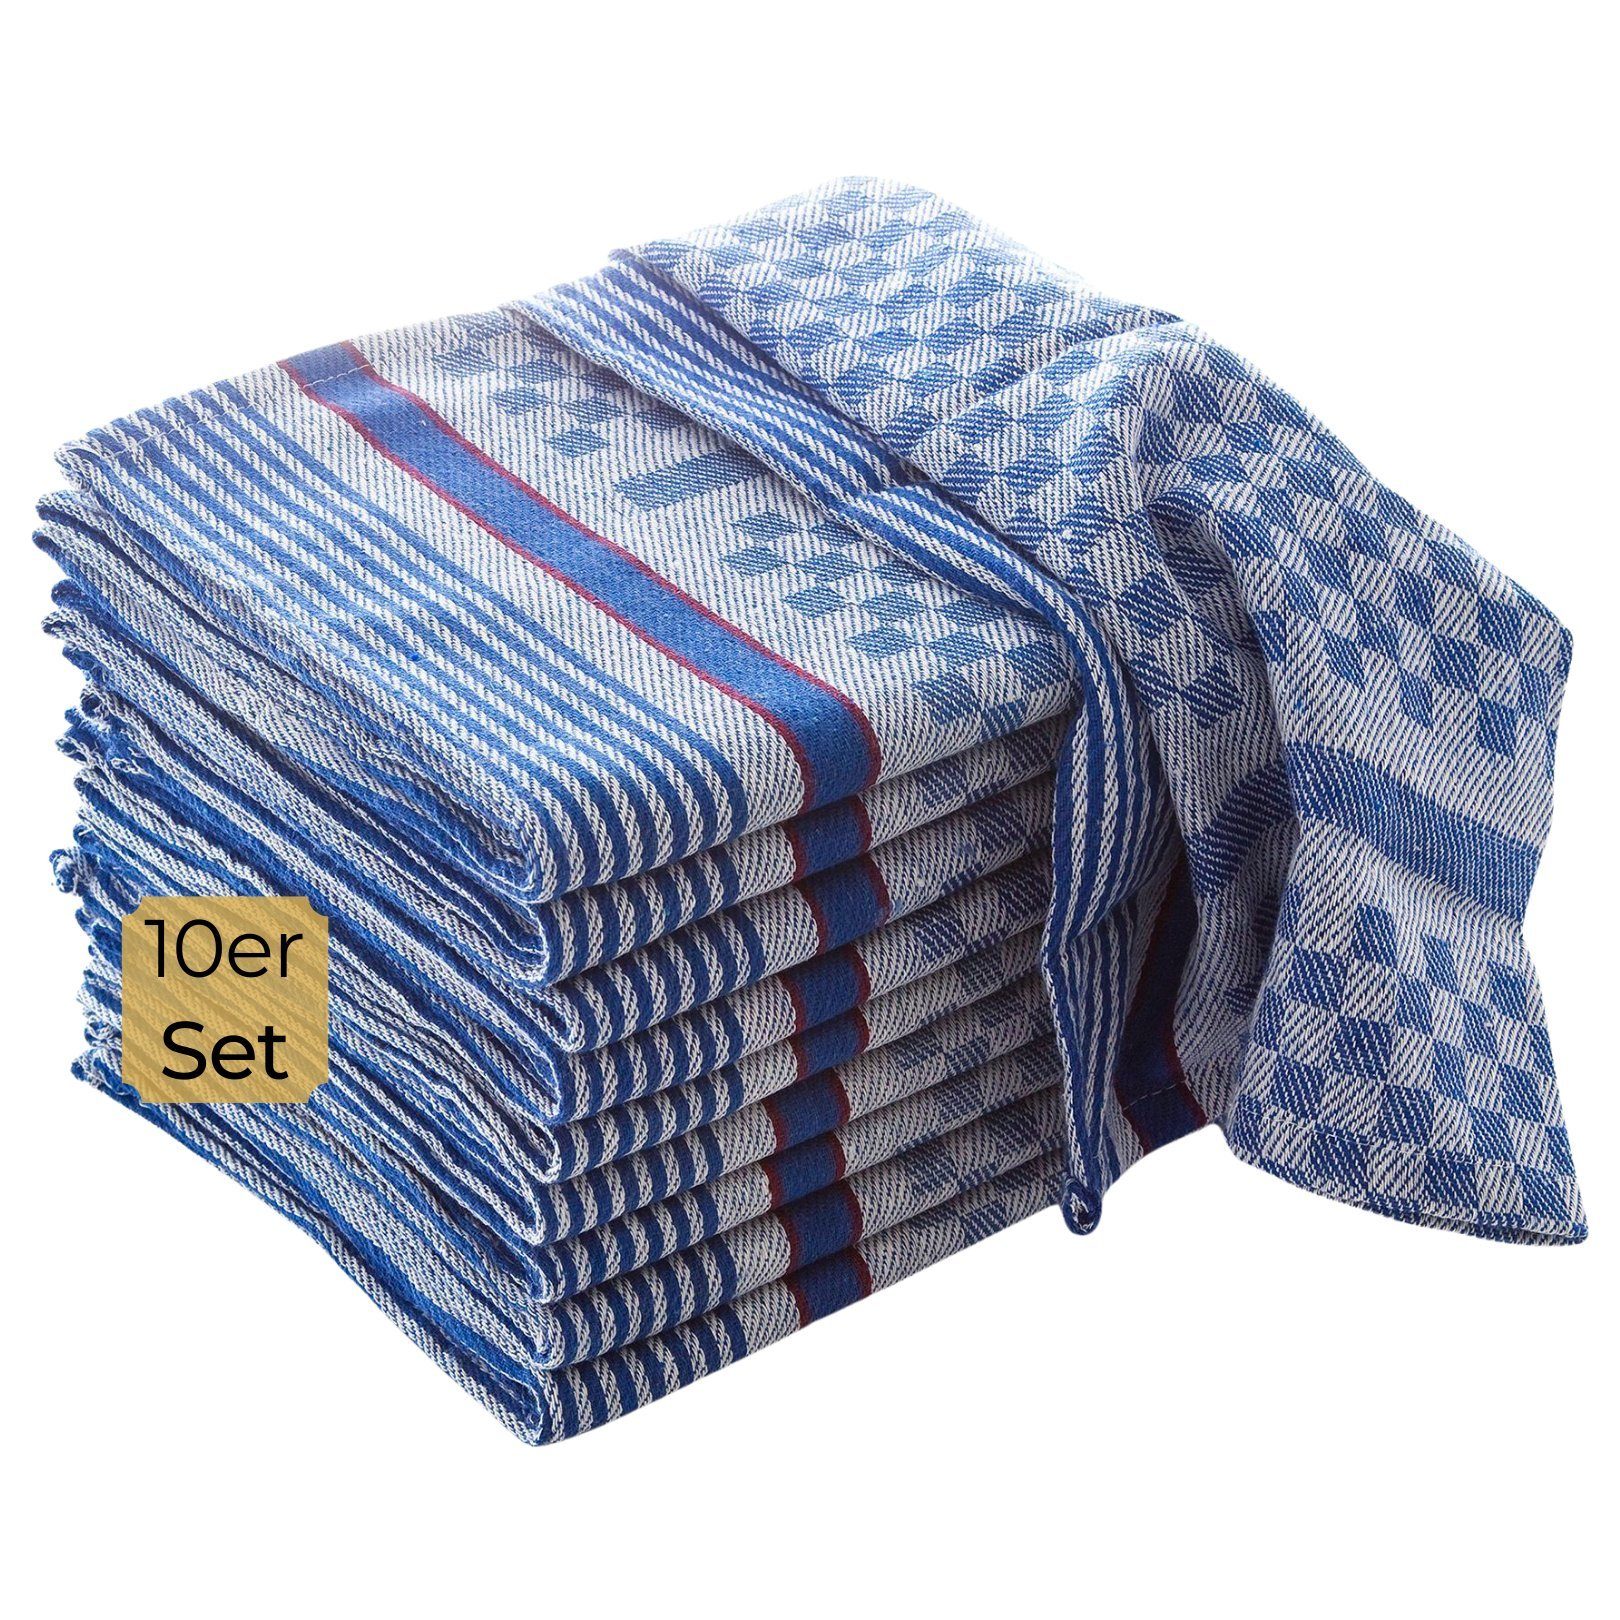 24 Stück Geschirrtücher Geschirrtuch Handtuch blau-weiß Putztücher Gastro NEU 